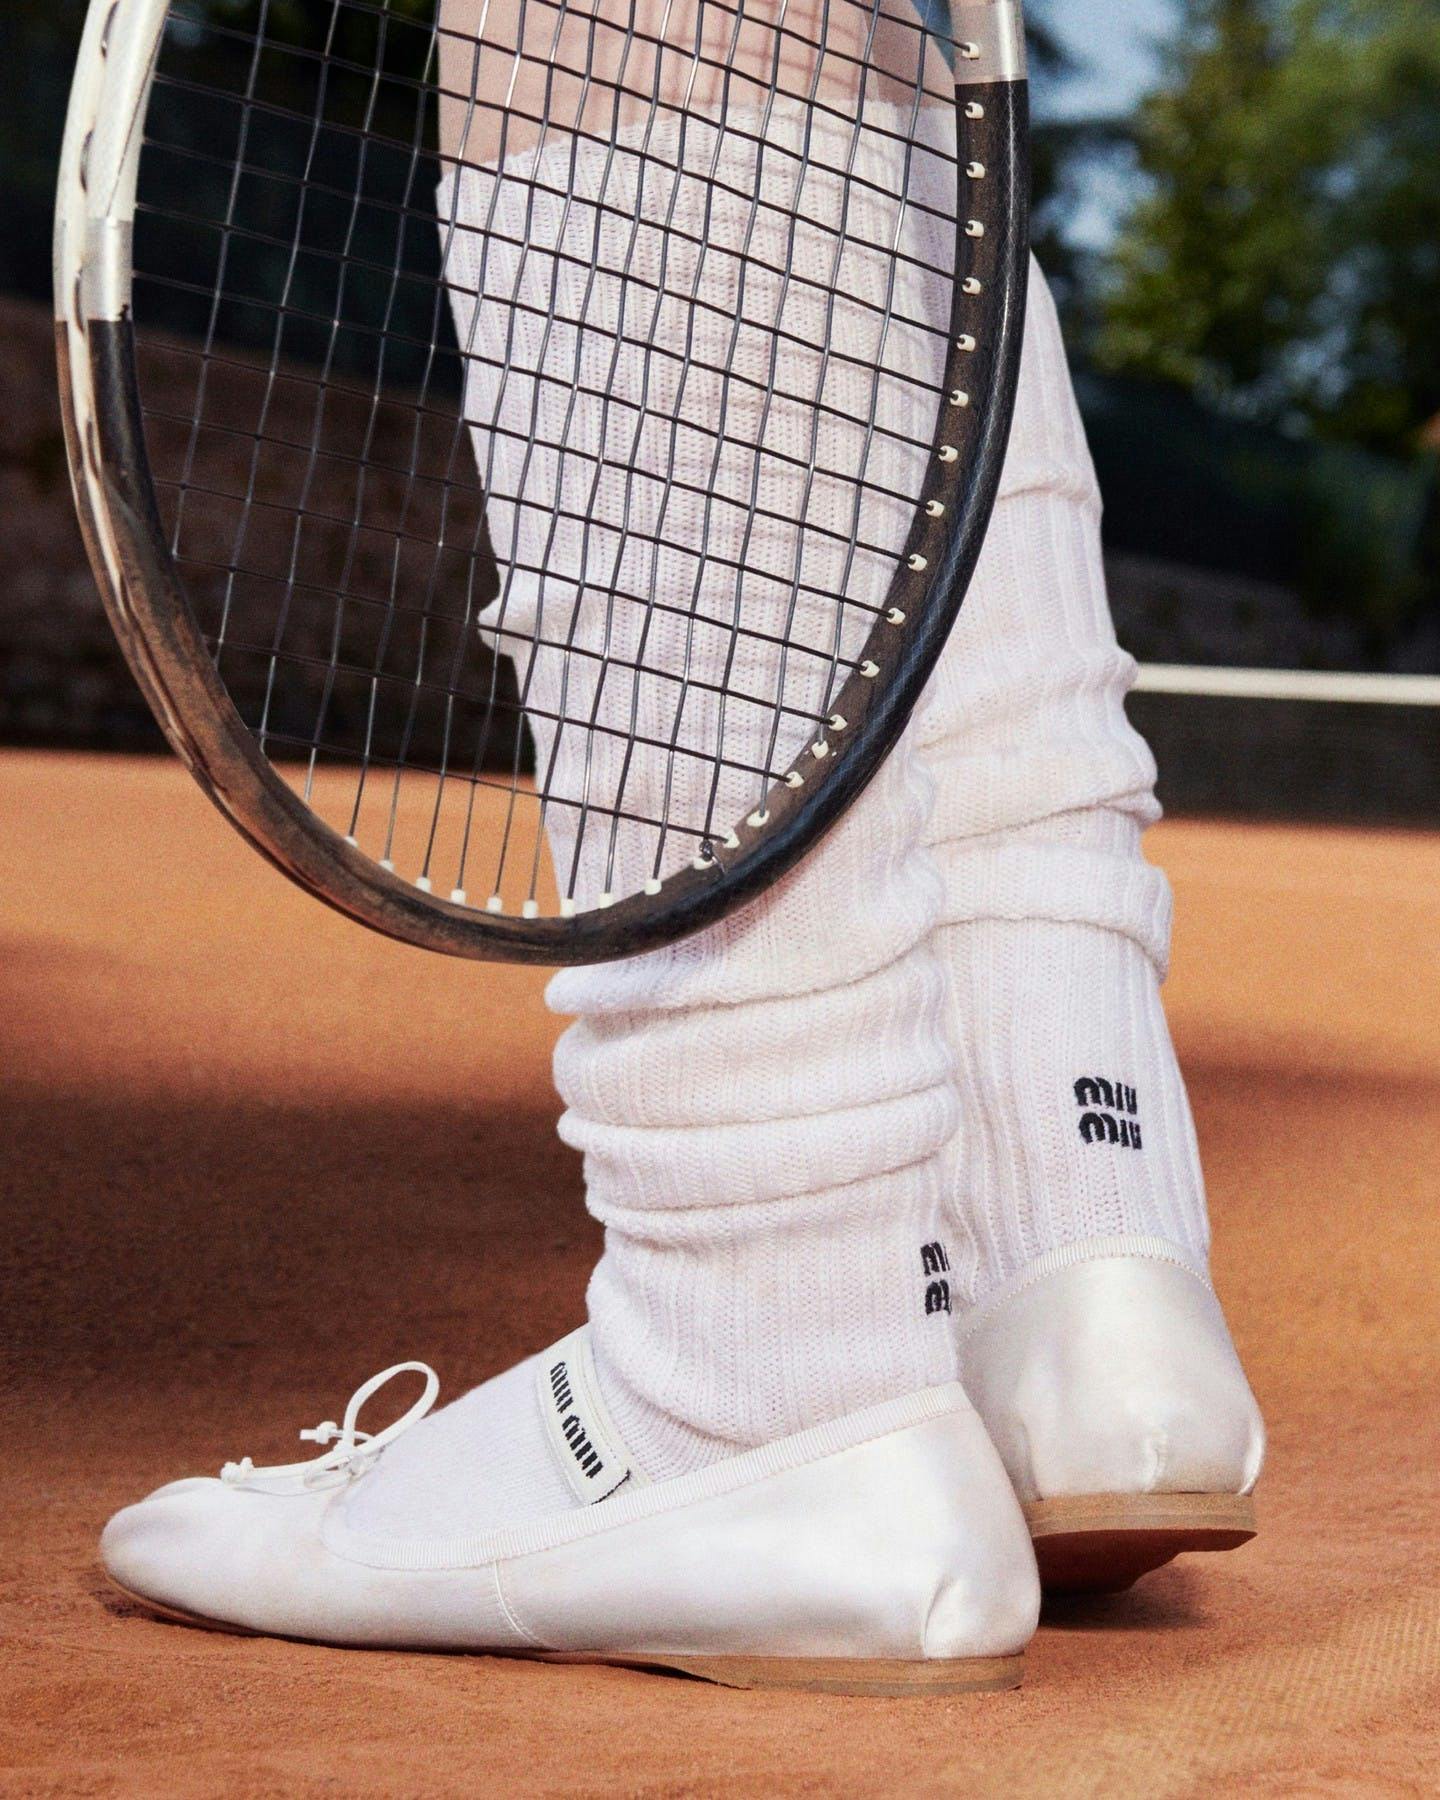 tennis racket racket tennis sport sneaker shoe footwear clothing